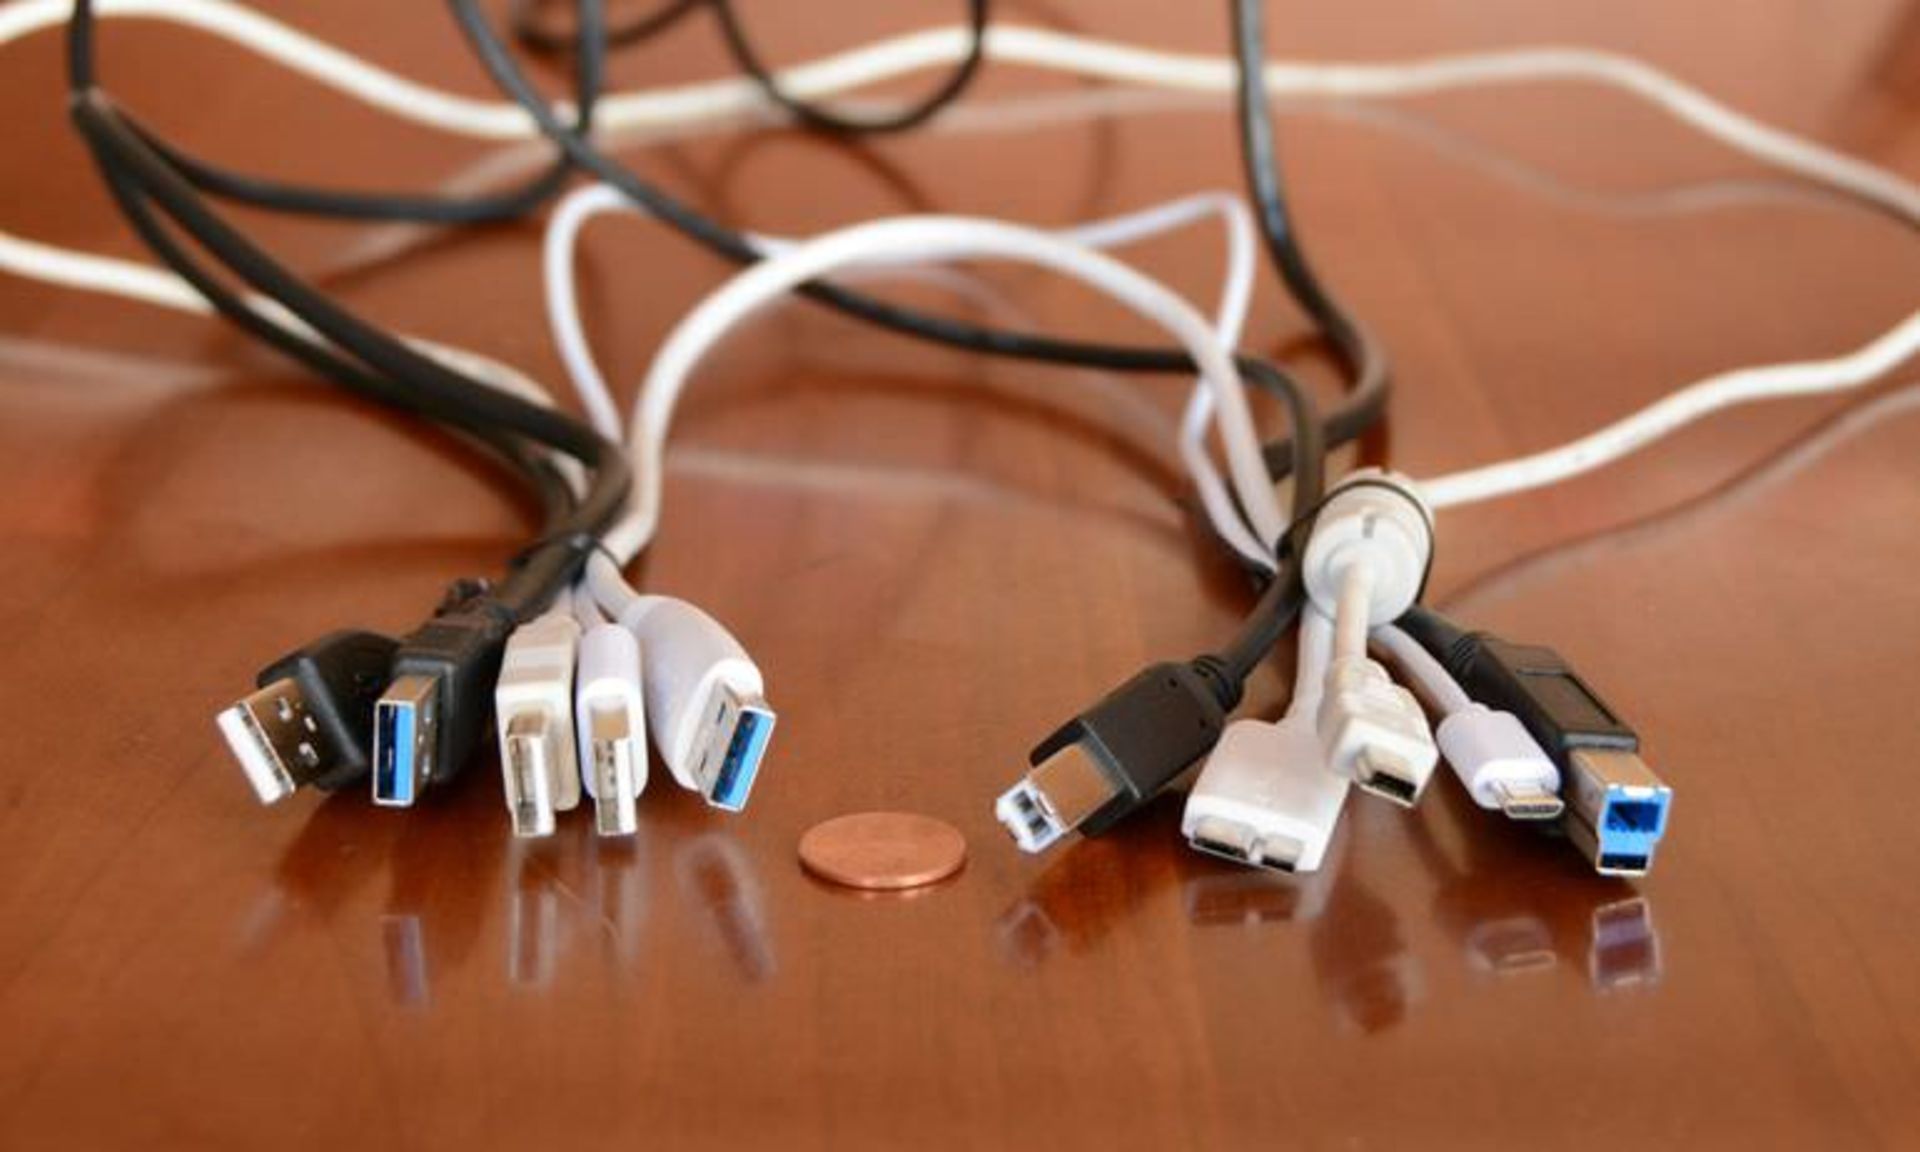 مرجع متخصصين ايران USB Cables